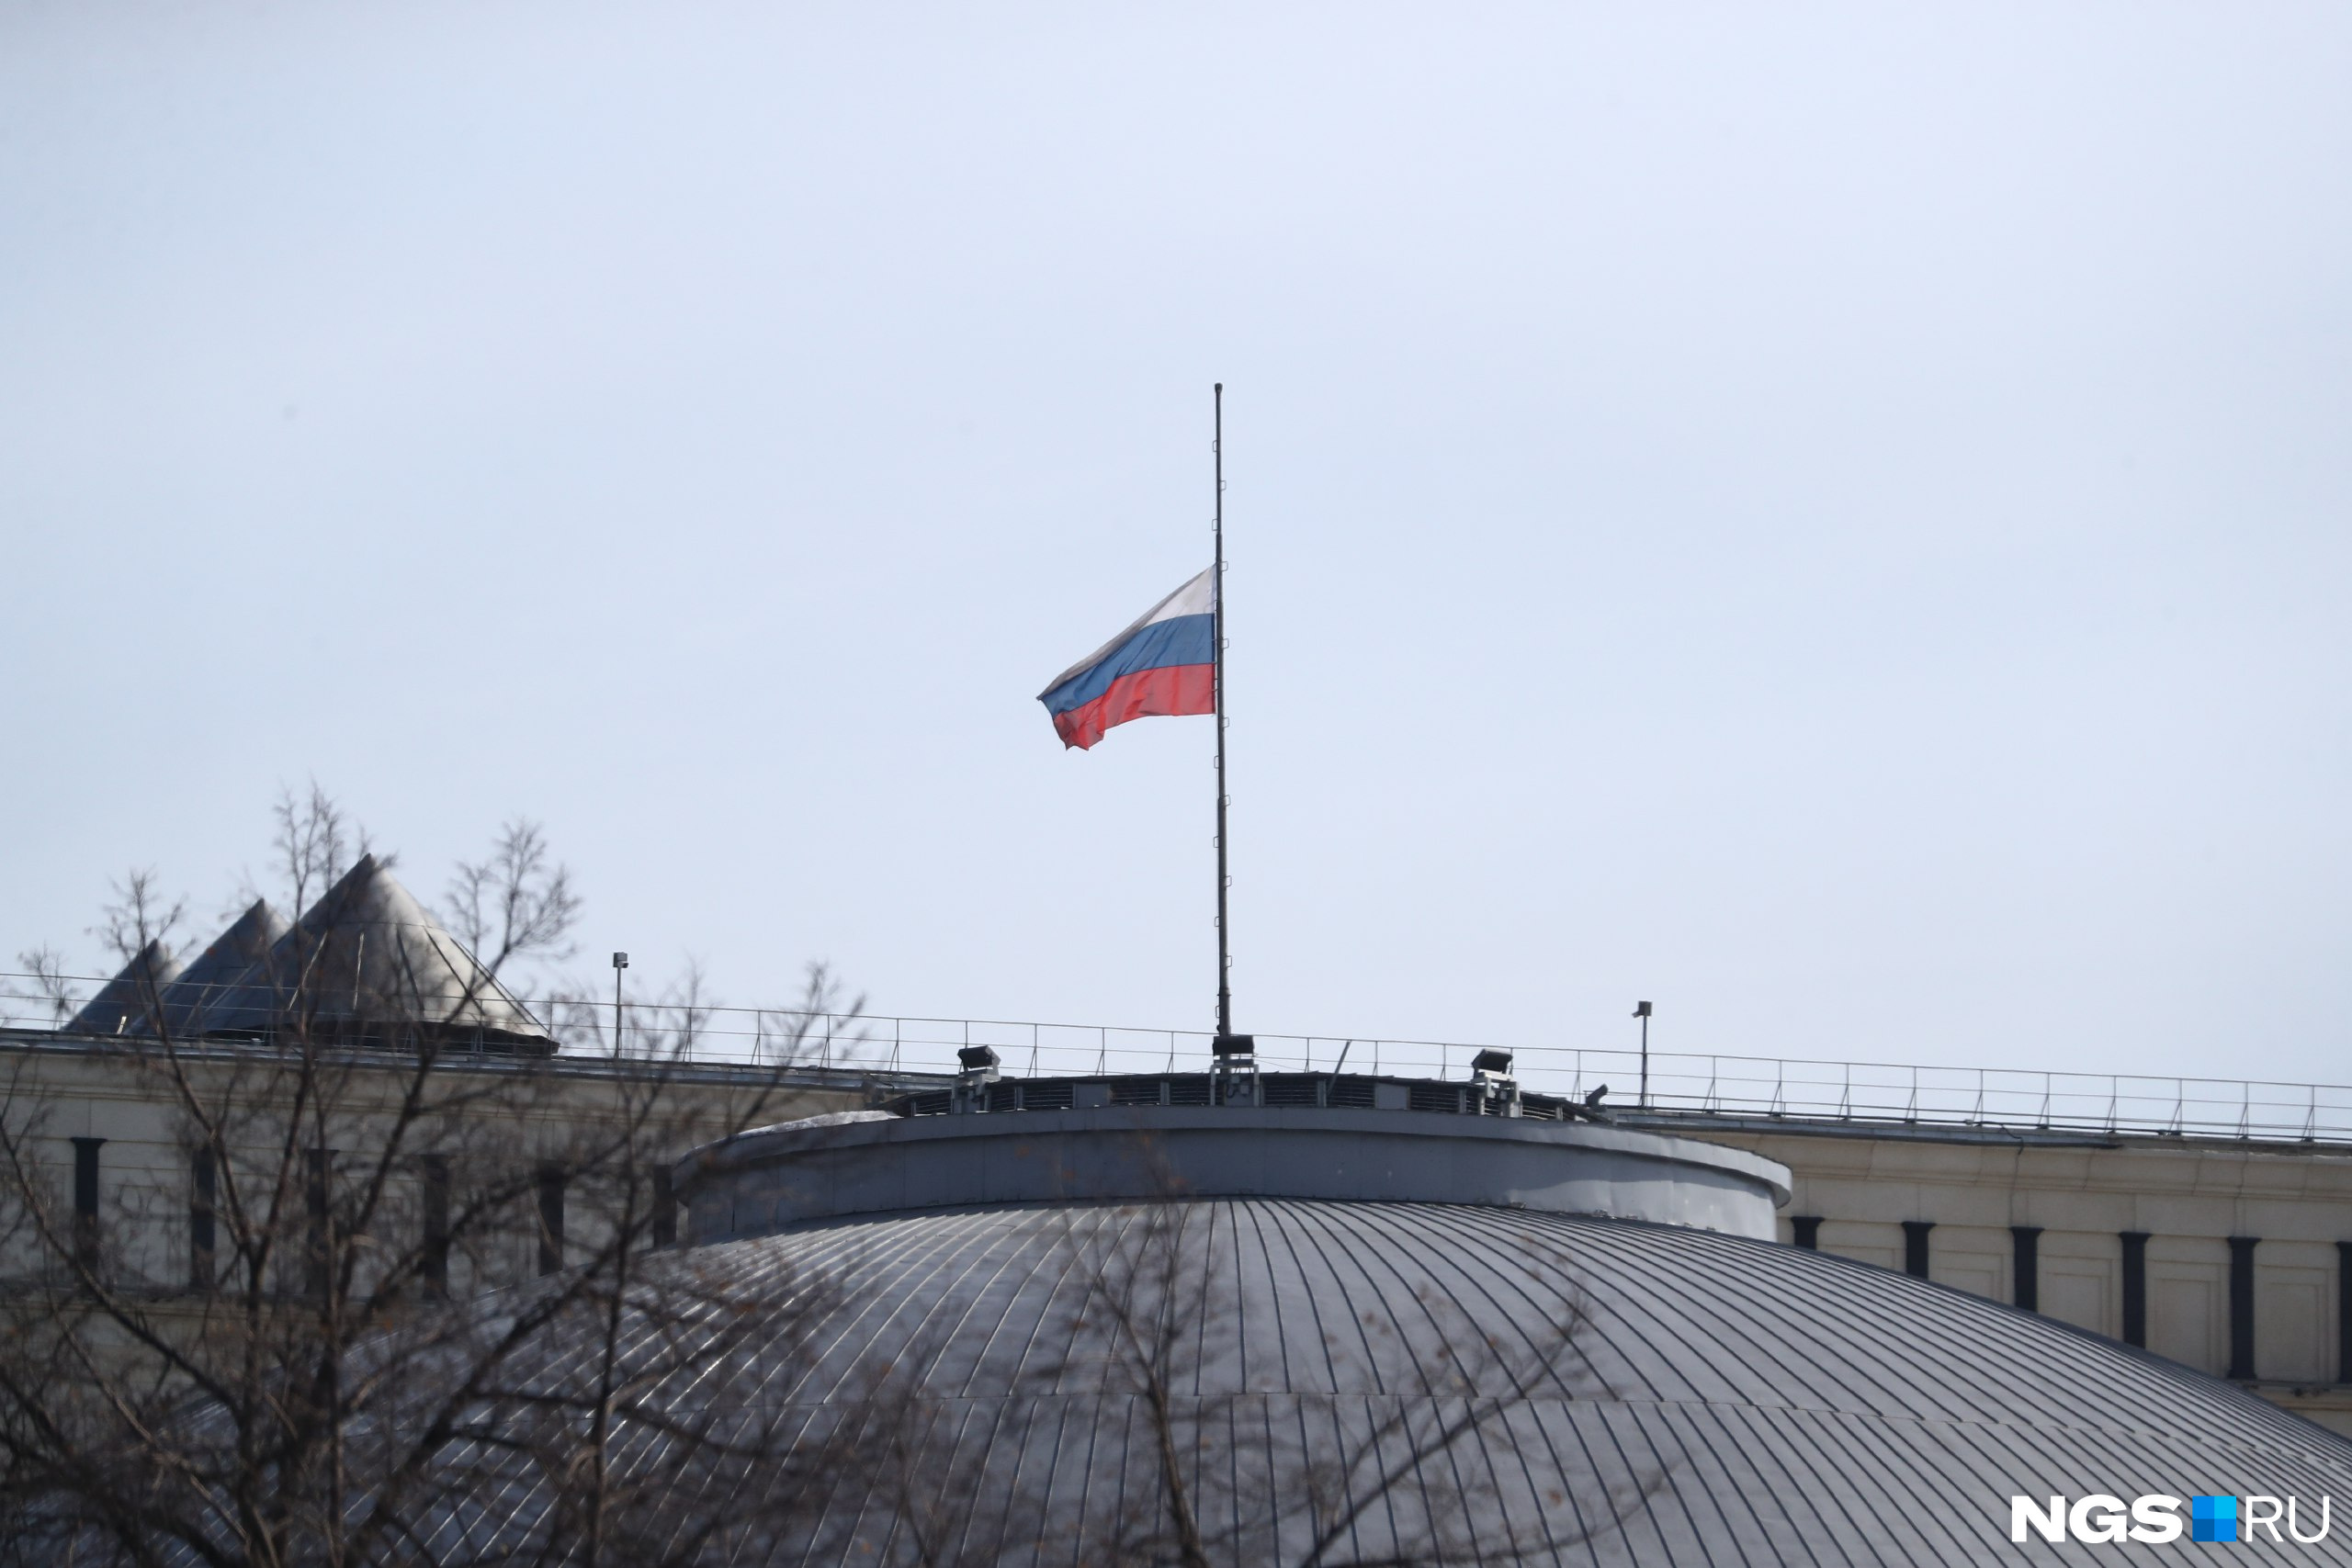 Флаг на крыше Театра оперы и балета в Новосибирске приспущен. НОВАТ одним из последних во всей стране заявил о переносе своих концертов&nbsp;